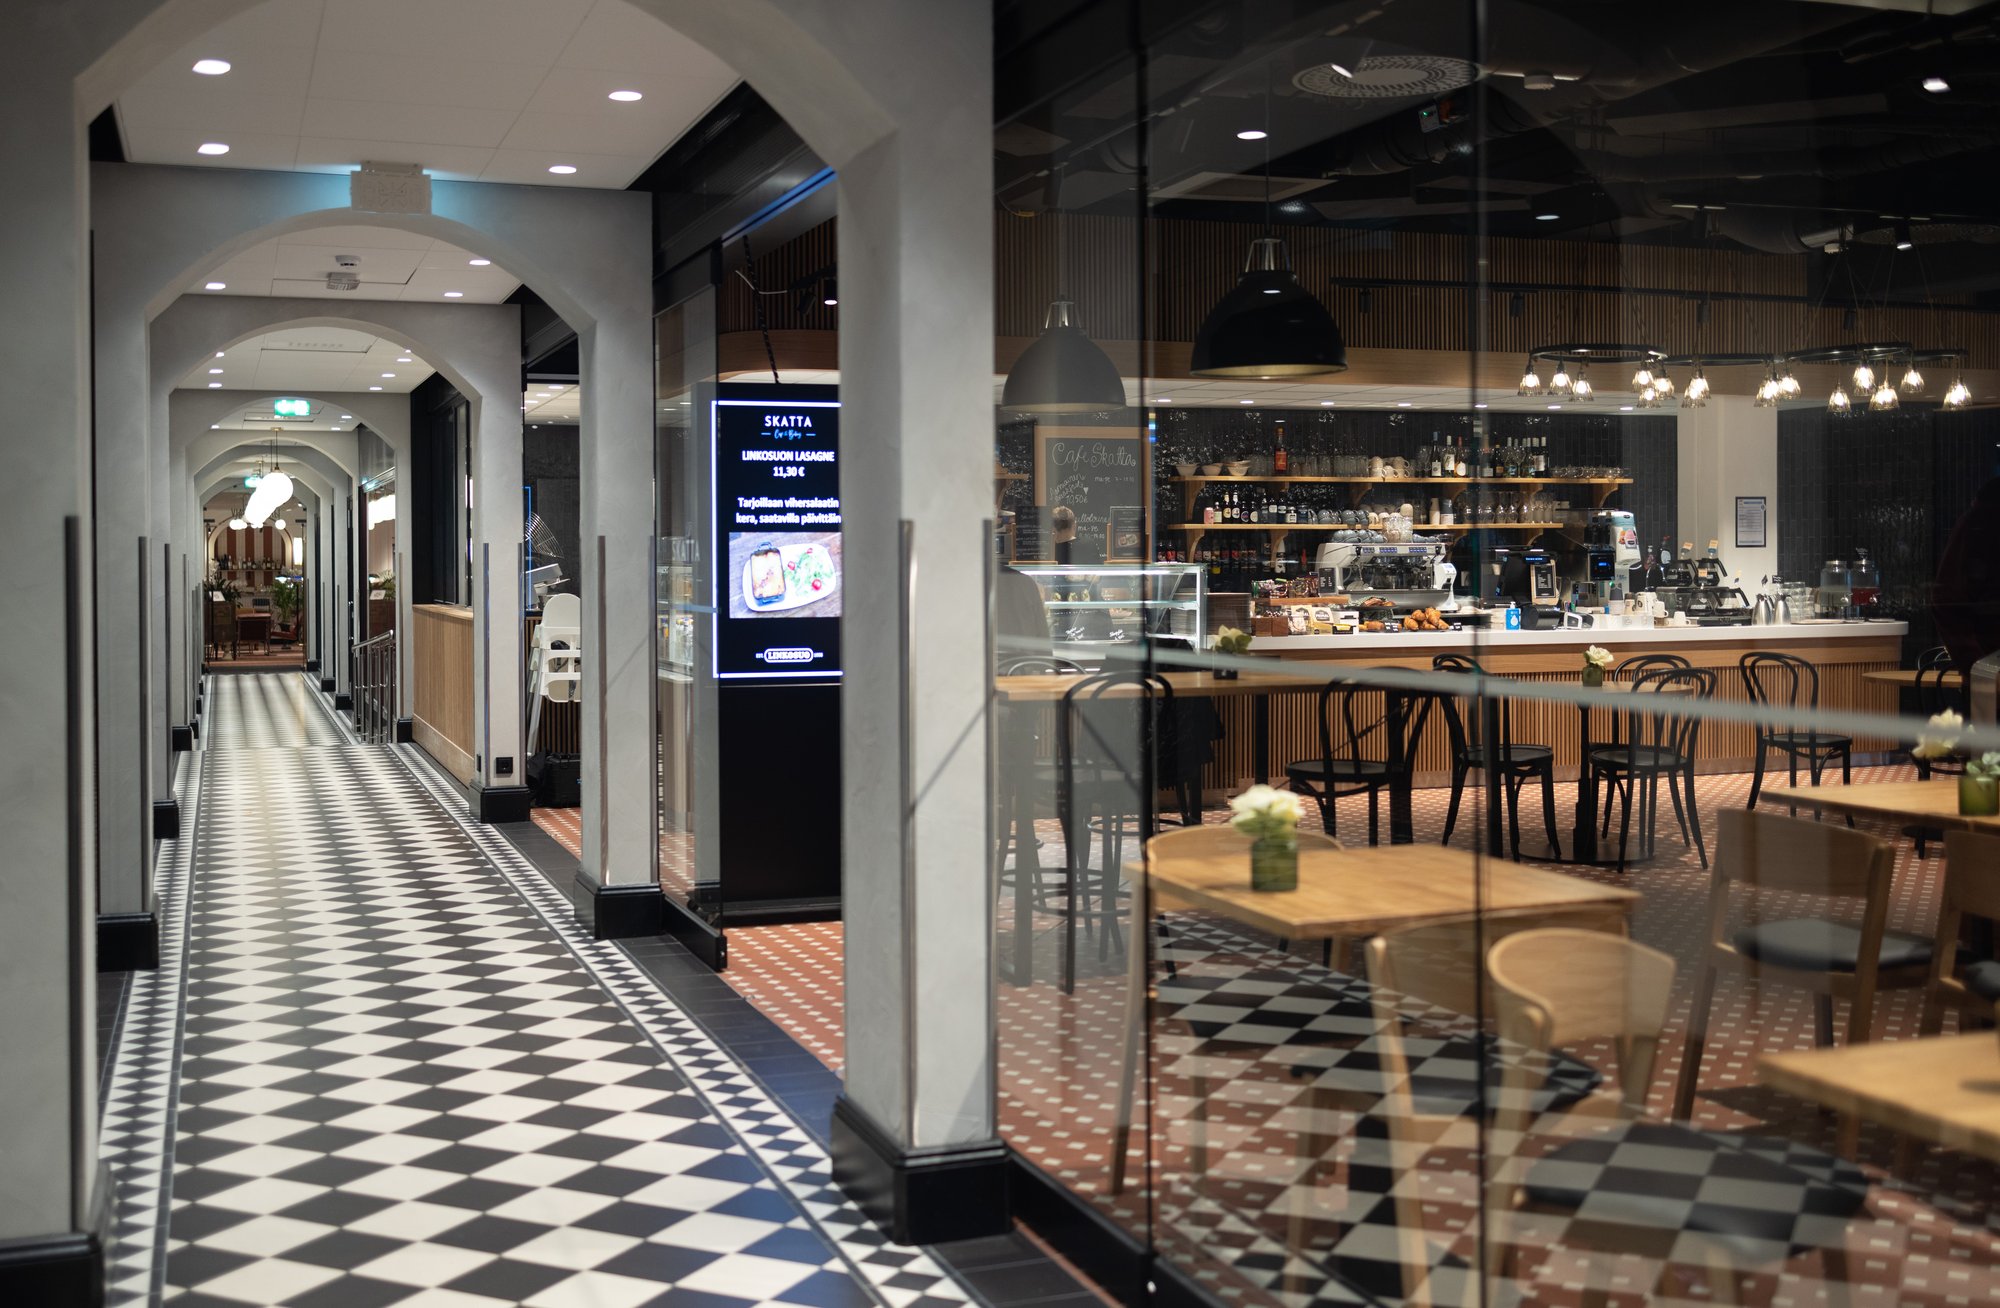 Linkosuon uusin kahvila Café Skatta avattiin elokuussa Helsinkiin Katajanokan uuteen kohtamispaikkaan Jungmanniin.